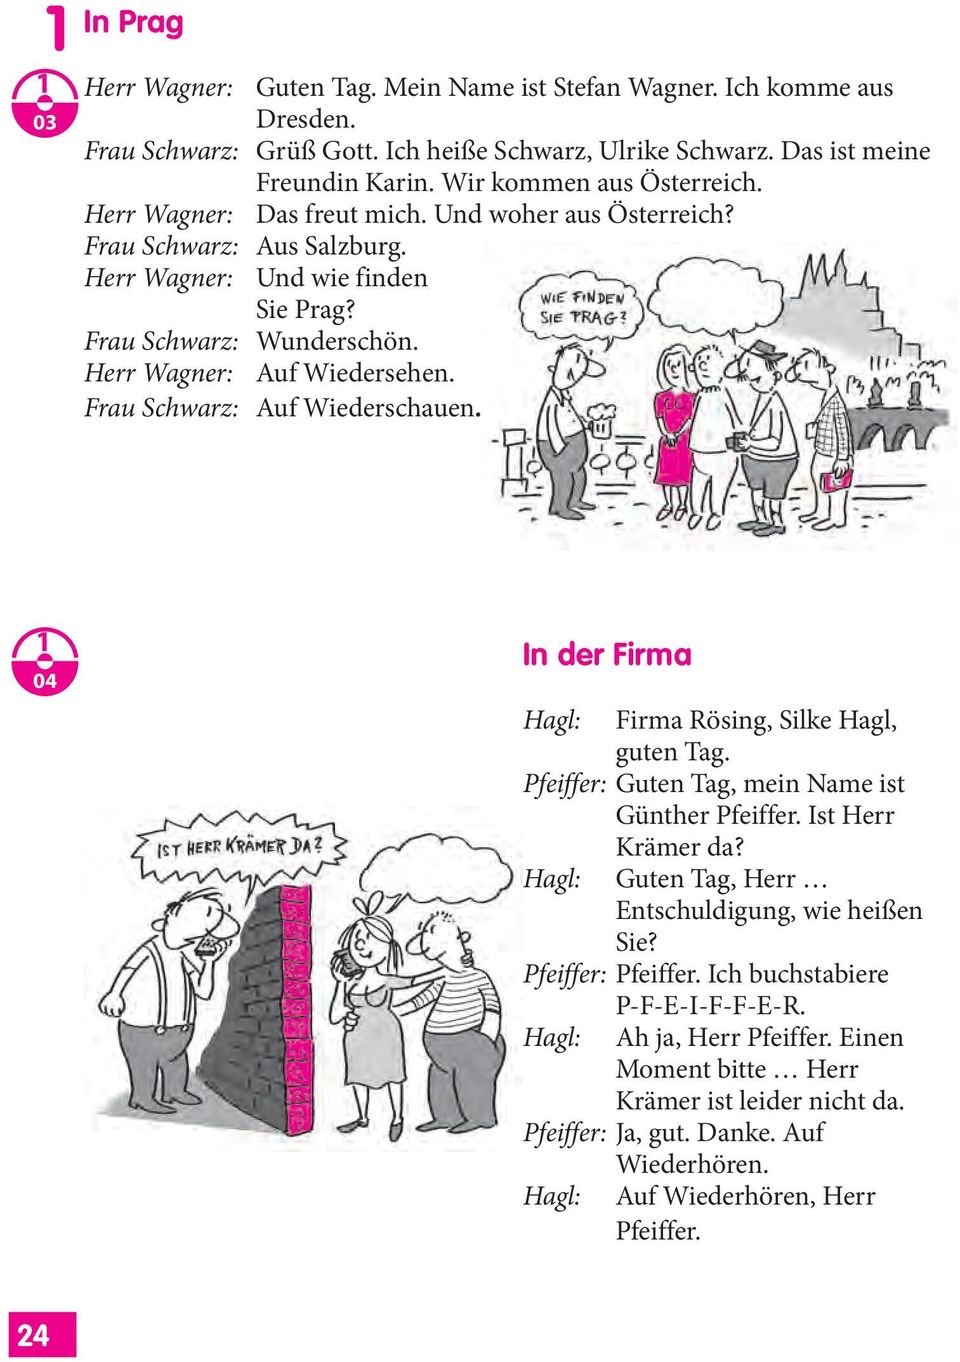 Herr Wagner: Auf Wiedersehen. Frau Schwarz: Auf Wiederschauen. 04 In der Firma Hagl: Firma Rösing, Silke Hagl, guten Tag. Pfeiffer: Guten Tag, mein Name ist Günther Pfeiffer. Ist Herr Krämer da?